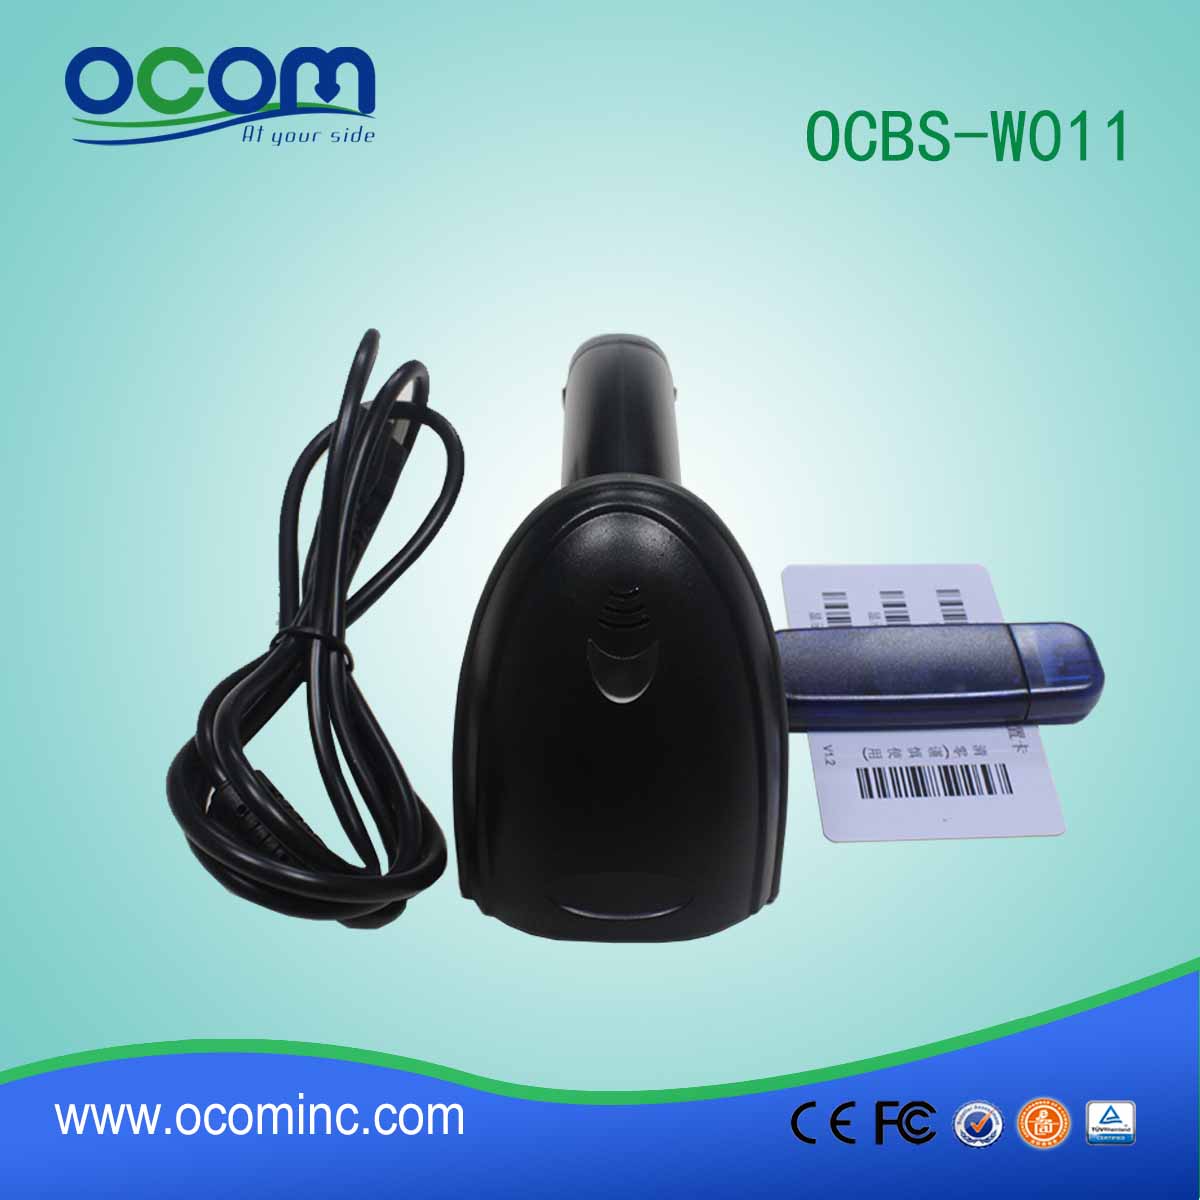 الصين رخيصة آلة جديدة اللاسلكية الباركود بلوتوث الماسح الضوئي -OCBS-W011